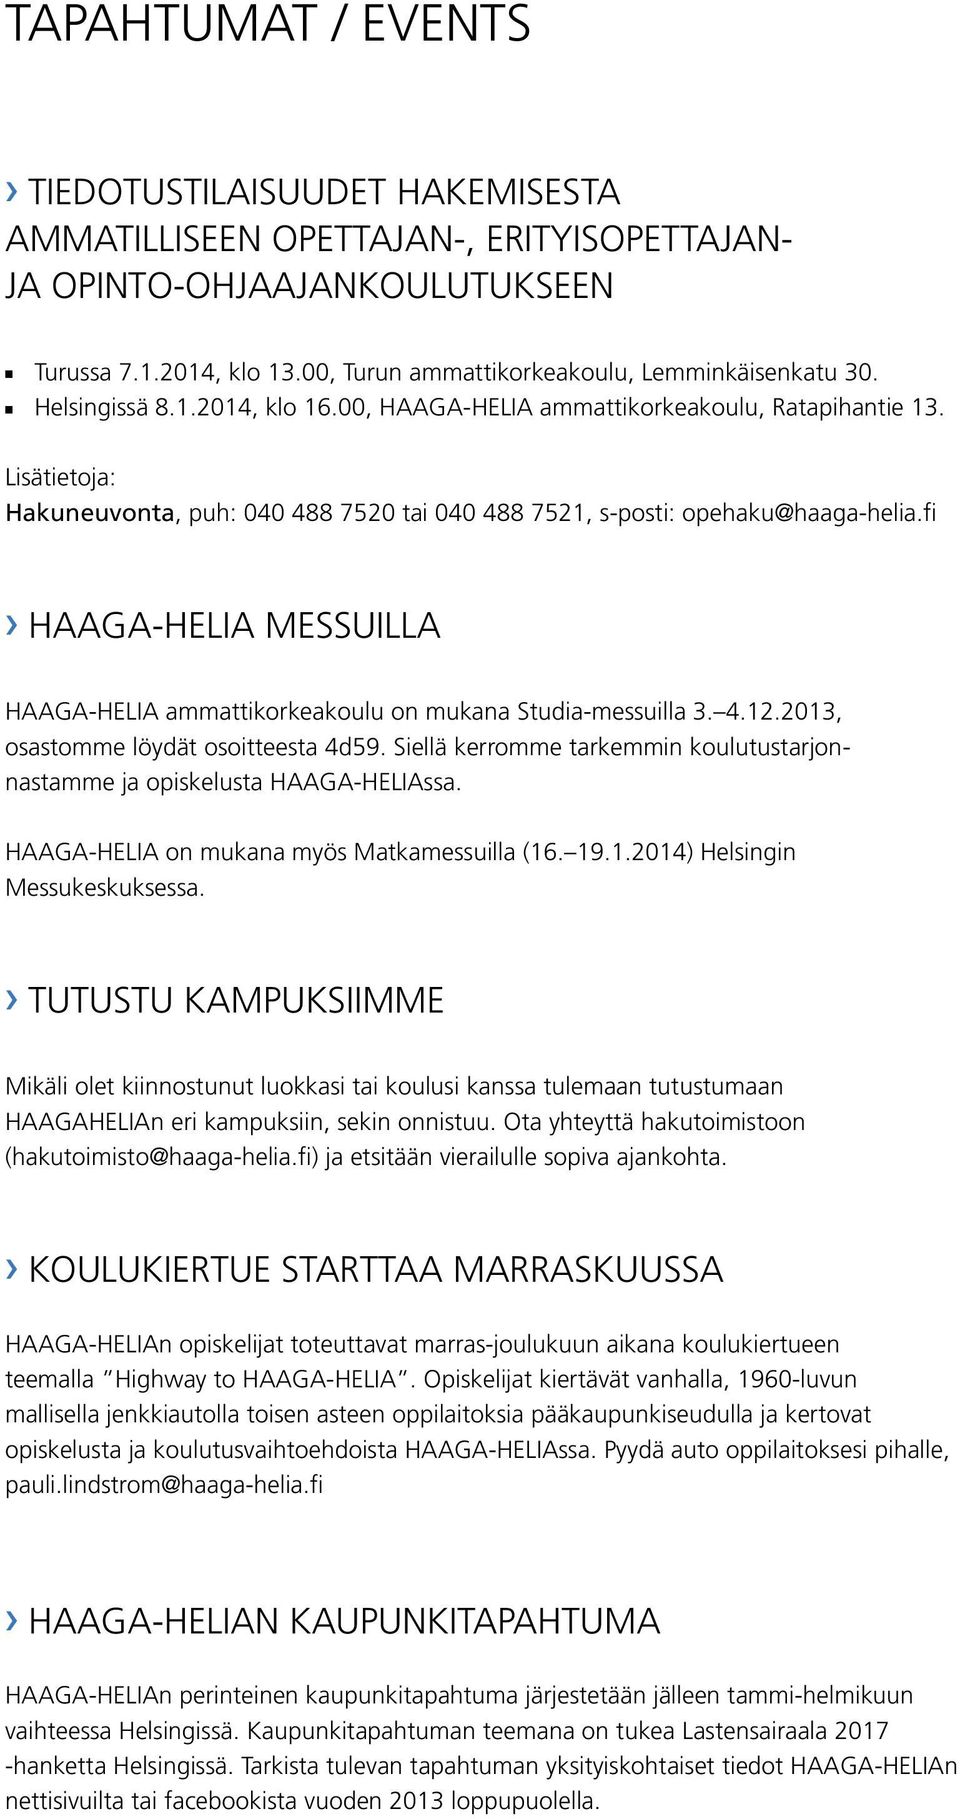 Lisätietoja: Hakuneuvonta, puh: 040 488 7520 tai 040 488 7521, s-posti: opehaku@haaga-helia.fi HAAGA-HELIA MESSUILLA HAAGA-HELIA ammattikorkeakoulu on mukana Studia-messuilla 3. 4.12.